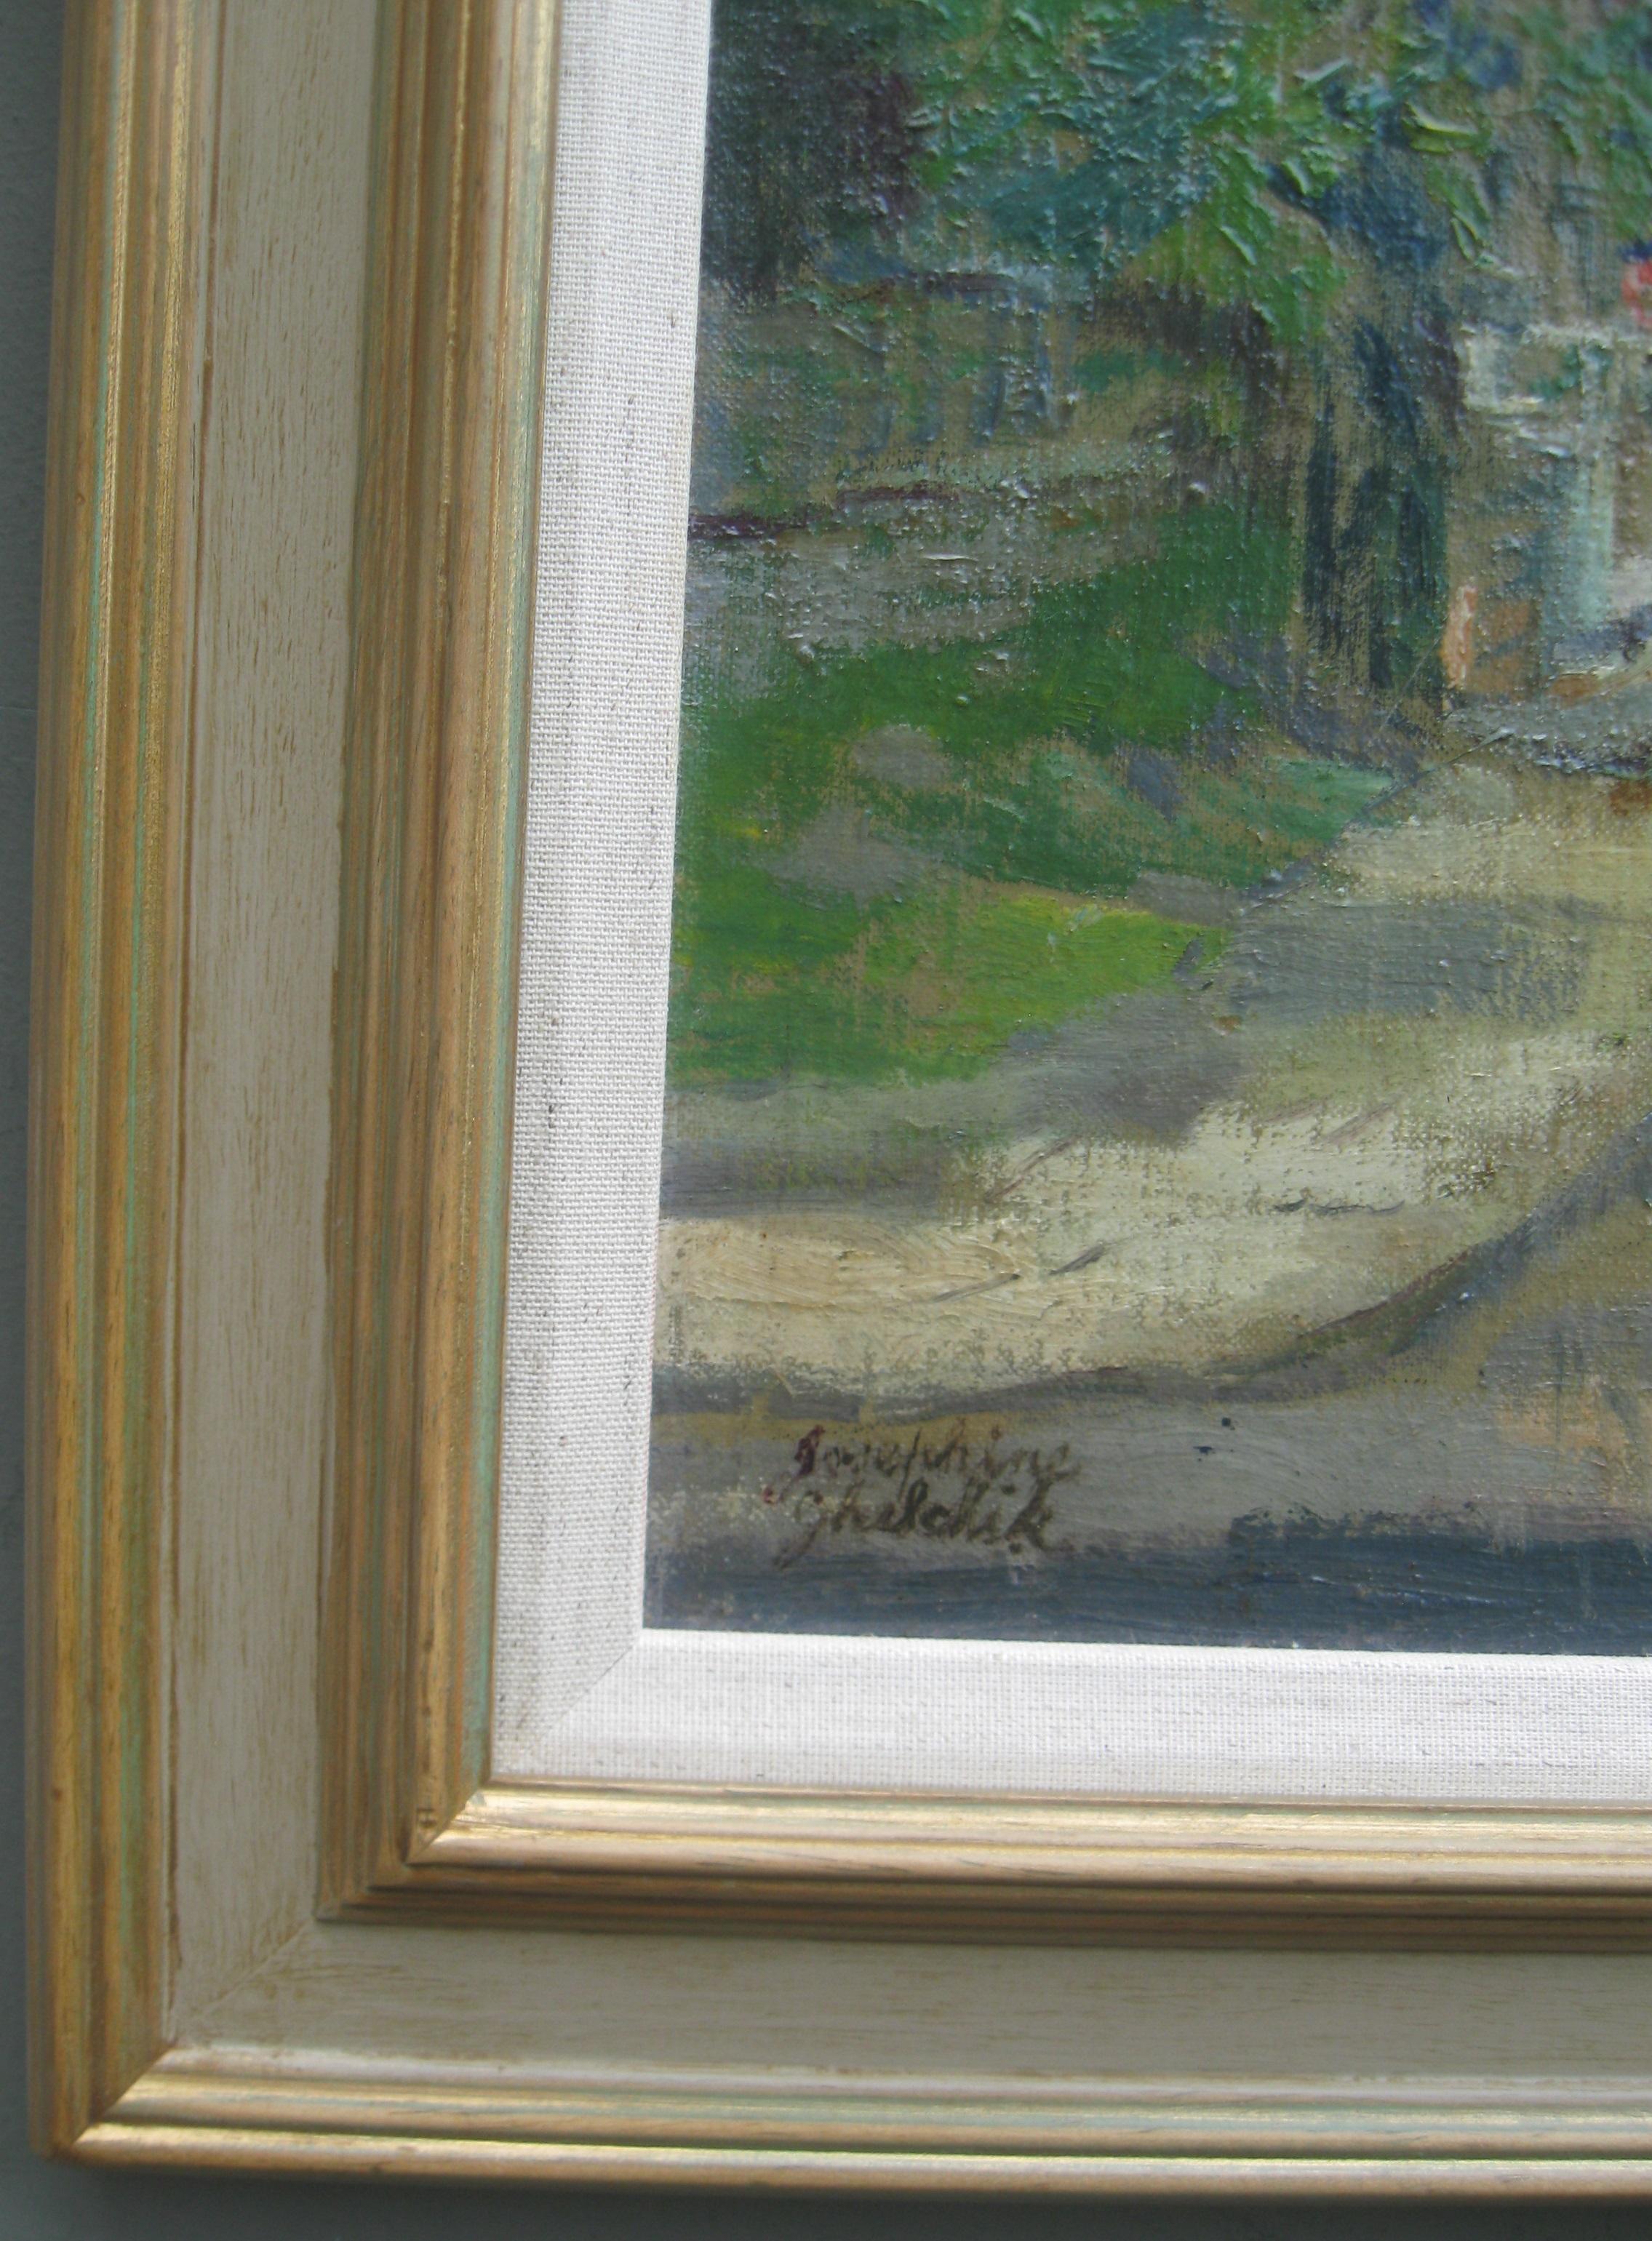 Ein feines impressionistisches Öl von Chiswick Mall, an der Themse, London, ca. 1930-40er Jahre, von der aufgeführten Künstlerin Josephine Matley Duddle  später Matley-Duddle Ghilchik (1890-1981)
öl auf Leinwand auf Karton aufgezogen 41cmx